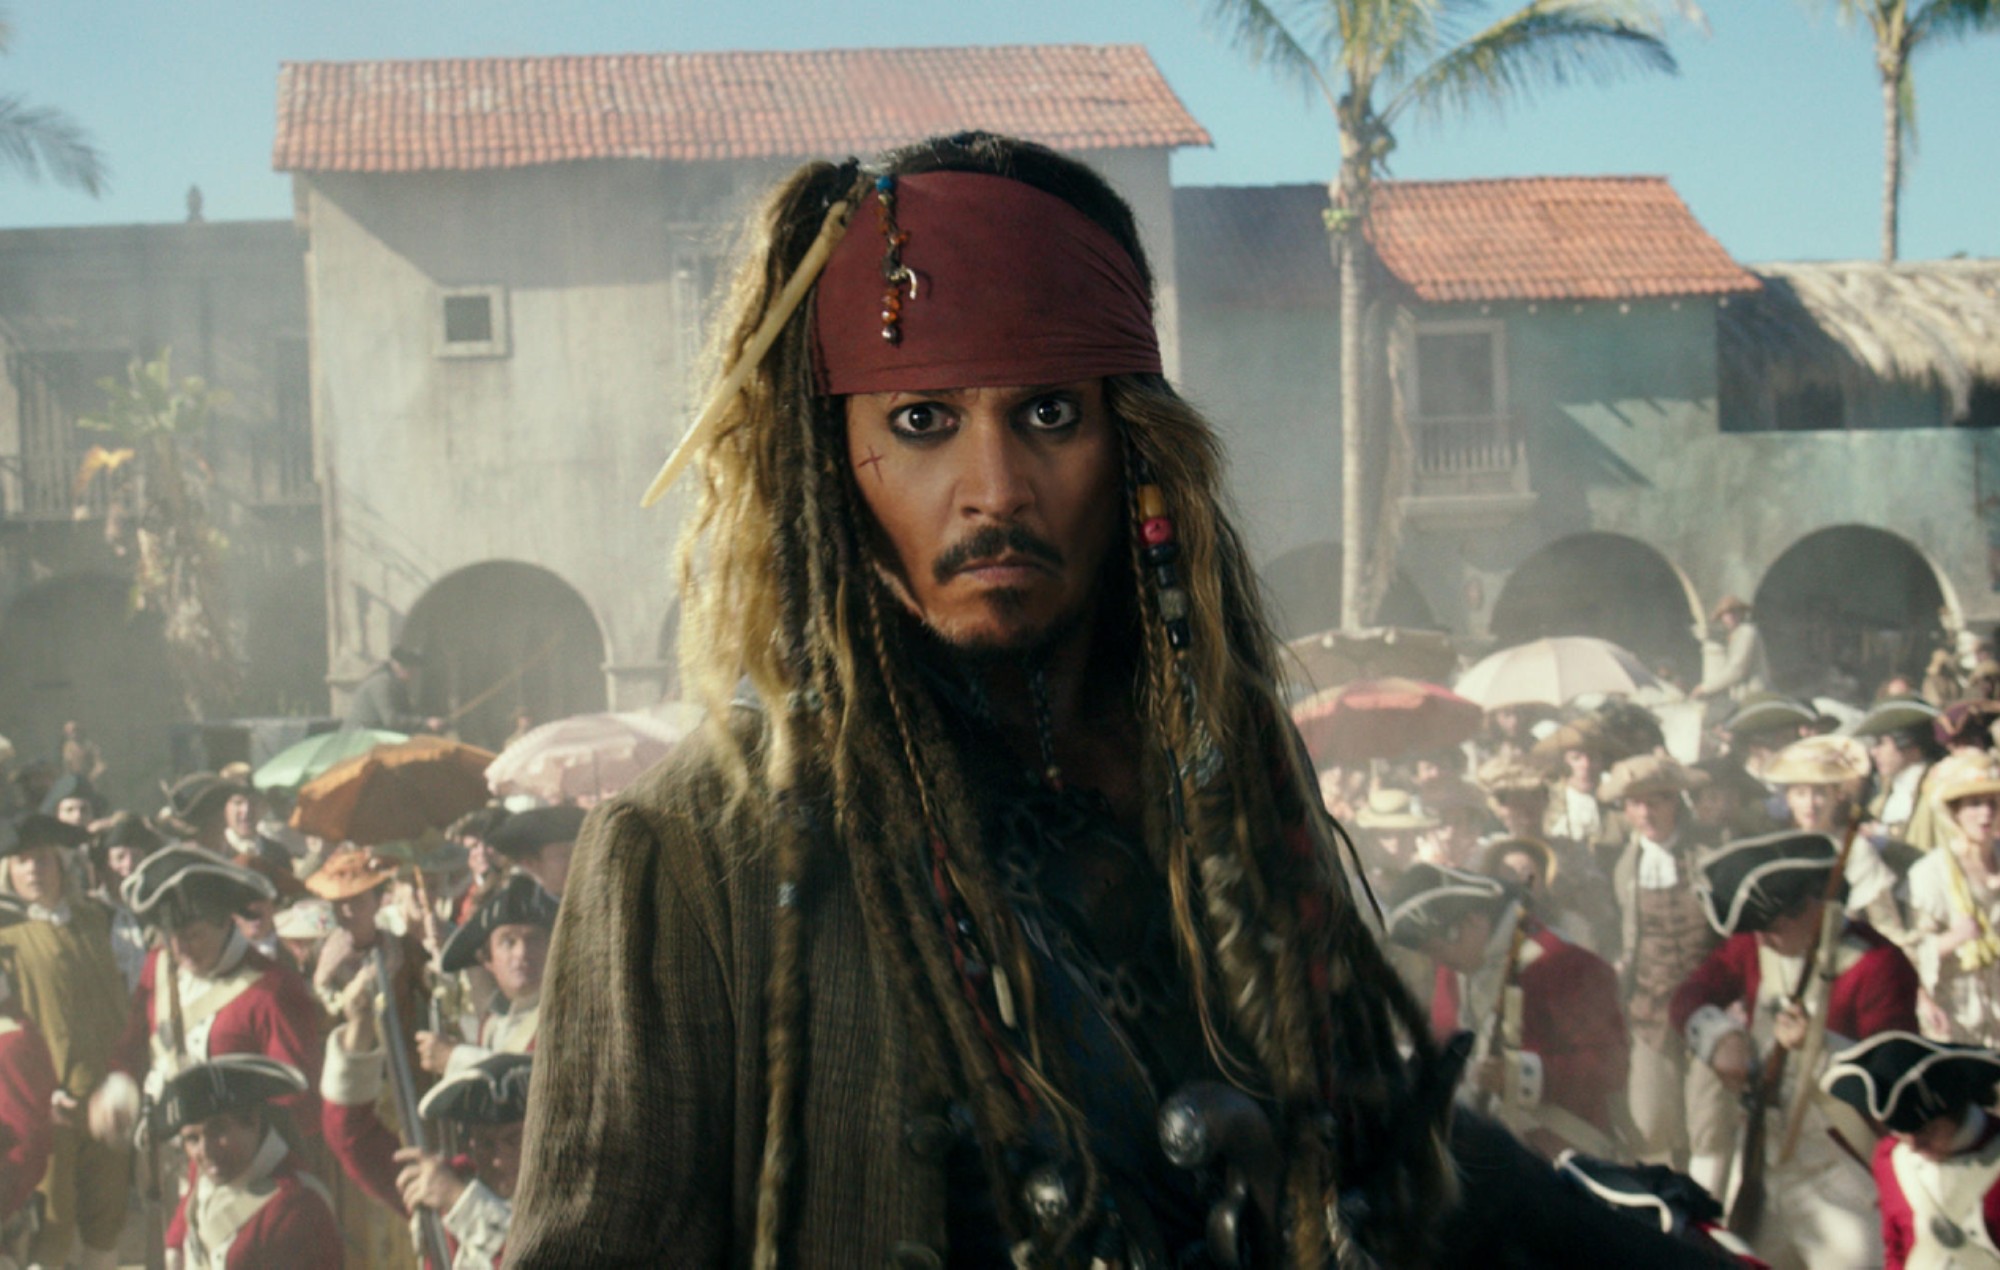 Las ventas de disfraces de Halloween de Jack Sparrow "se disparan" tras el juicio de Johnny Depp contra Amber Heard